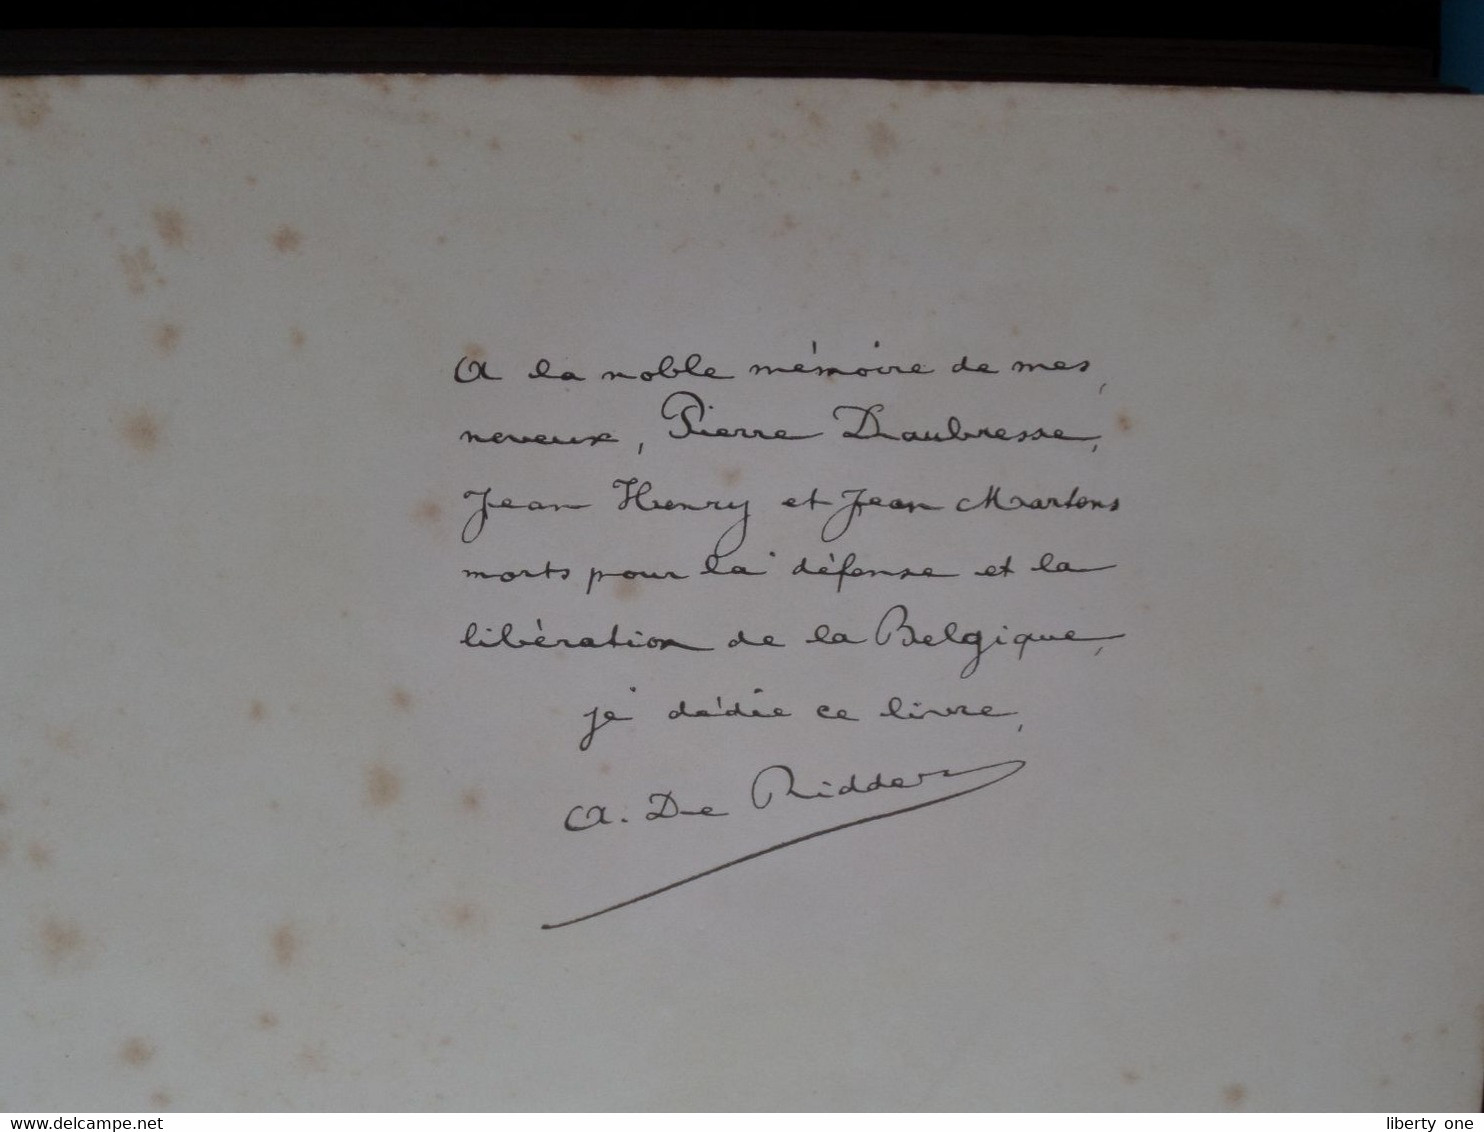 La BELGIQUE et la GUERRE - IV Histoire Diplomatique 1914-1918 ( Edit. H. BERTELS Bruxelles / A. MEERSMANS Relieur ) !